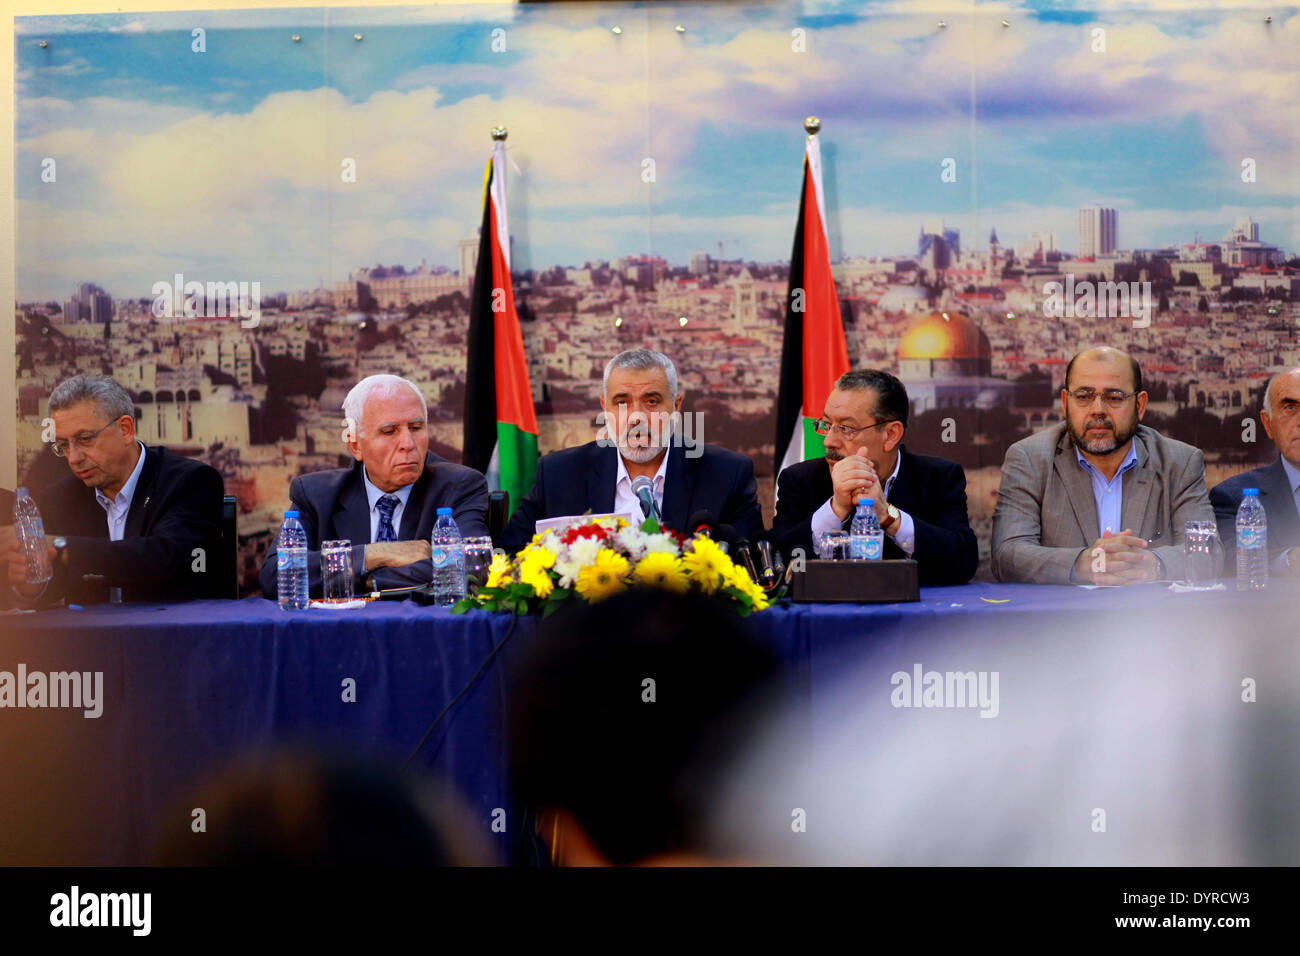 GAZA, Palästina-APRIL 23: Die Hamas Regierungschef Ismail Haniyeh und Senior Fatah offizielle Azzam Al-Ahmed (L) eine Pressekonferenz teilnehmen, da sie ein Versöhnungsabkommen in Gaza-Stadt 23. April 2014 bekannt.  nach West Bank und Gaza-Streifen Staats-und Regierungschefs vereinbarten, eine Einheitsregierung zu bilden, innerhalb von fünf Wochen als Friedensgespräche mit Israel Gesicht zusammenbrechen. Unter der Annäherung zwischen der Palästinensischen Befreiungsorganisation (PLO)--international anerkannt als einziger Vertreter des palästinensischen Volkes-- und die islamistische Hamas, welche Regeln Gaza-Streifen, die Seiten zu Form vereinbart, gehen ein "nationaler Konsens" Stockfoto